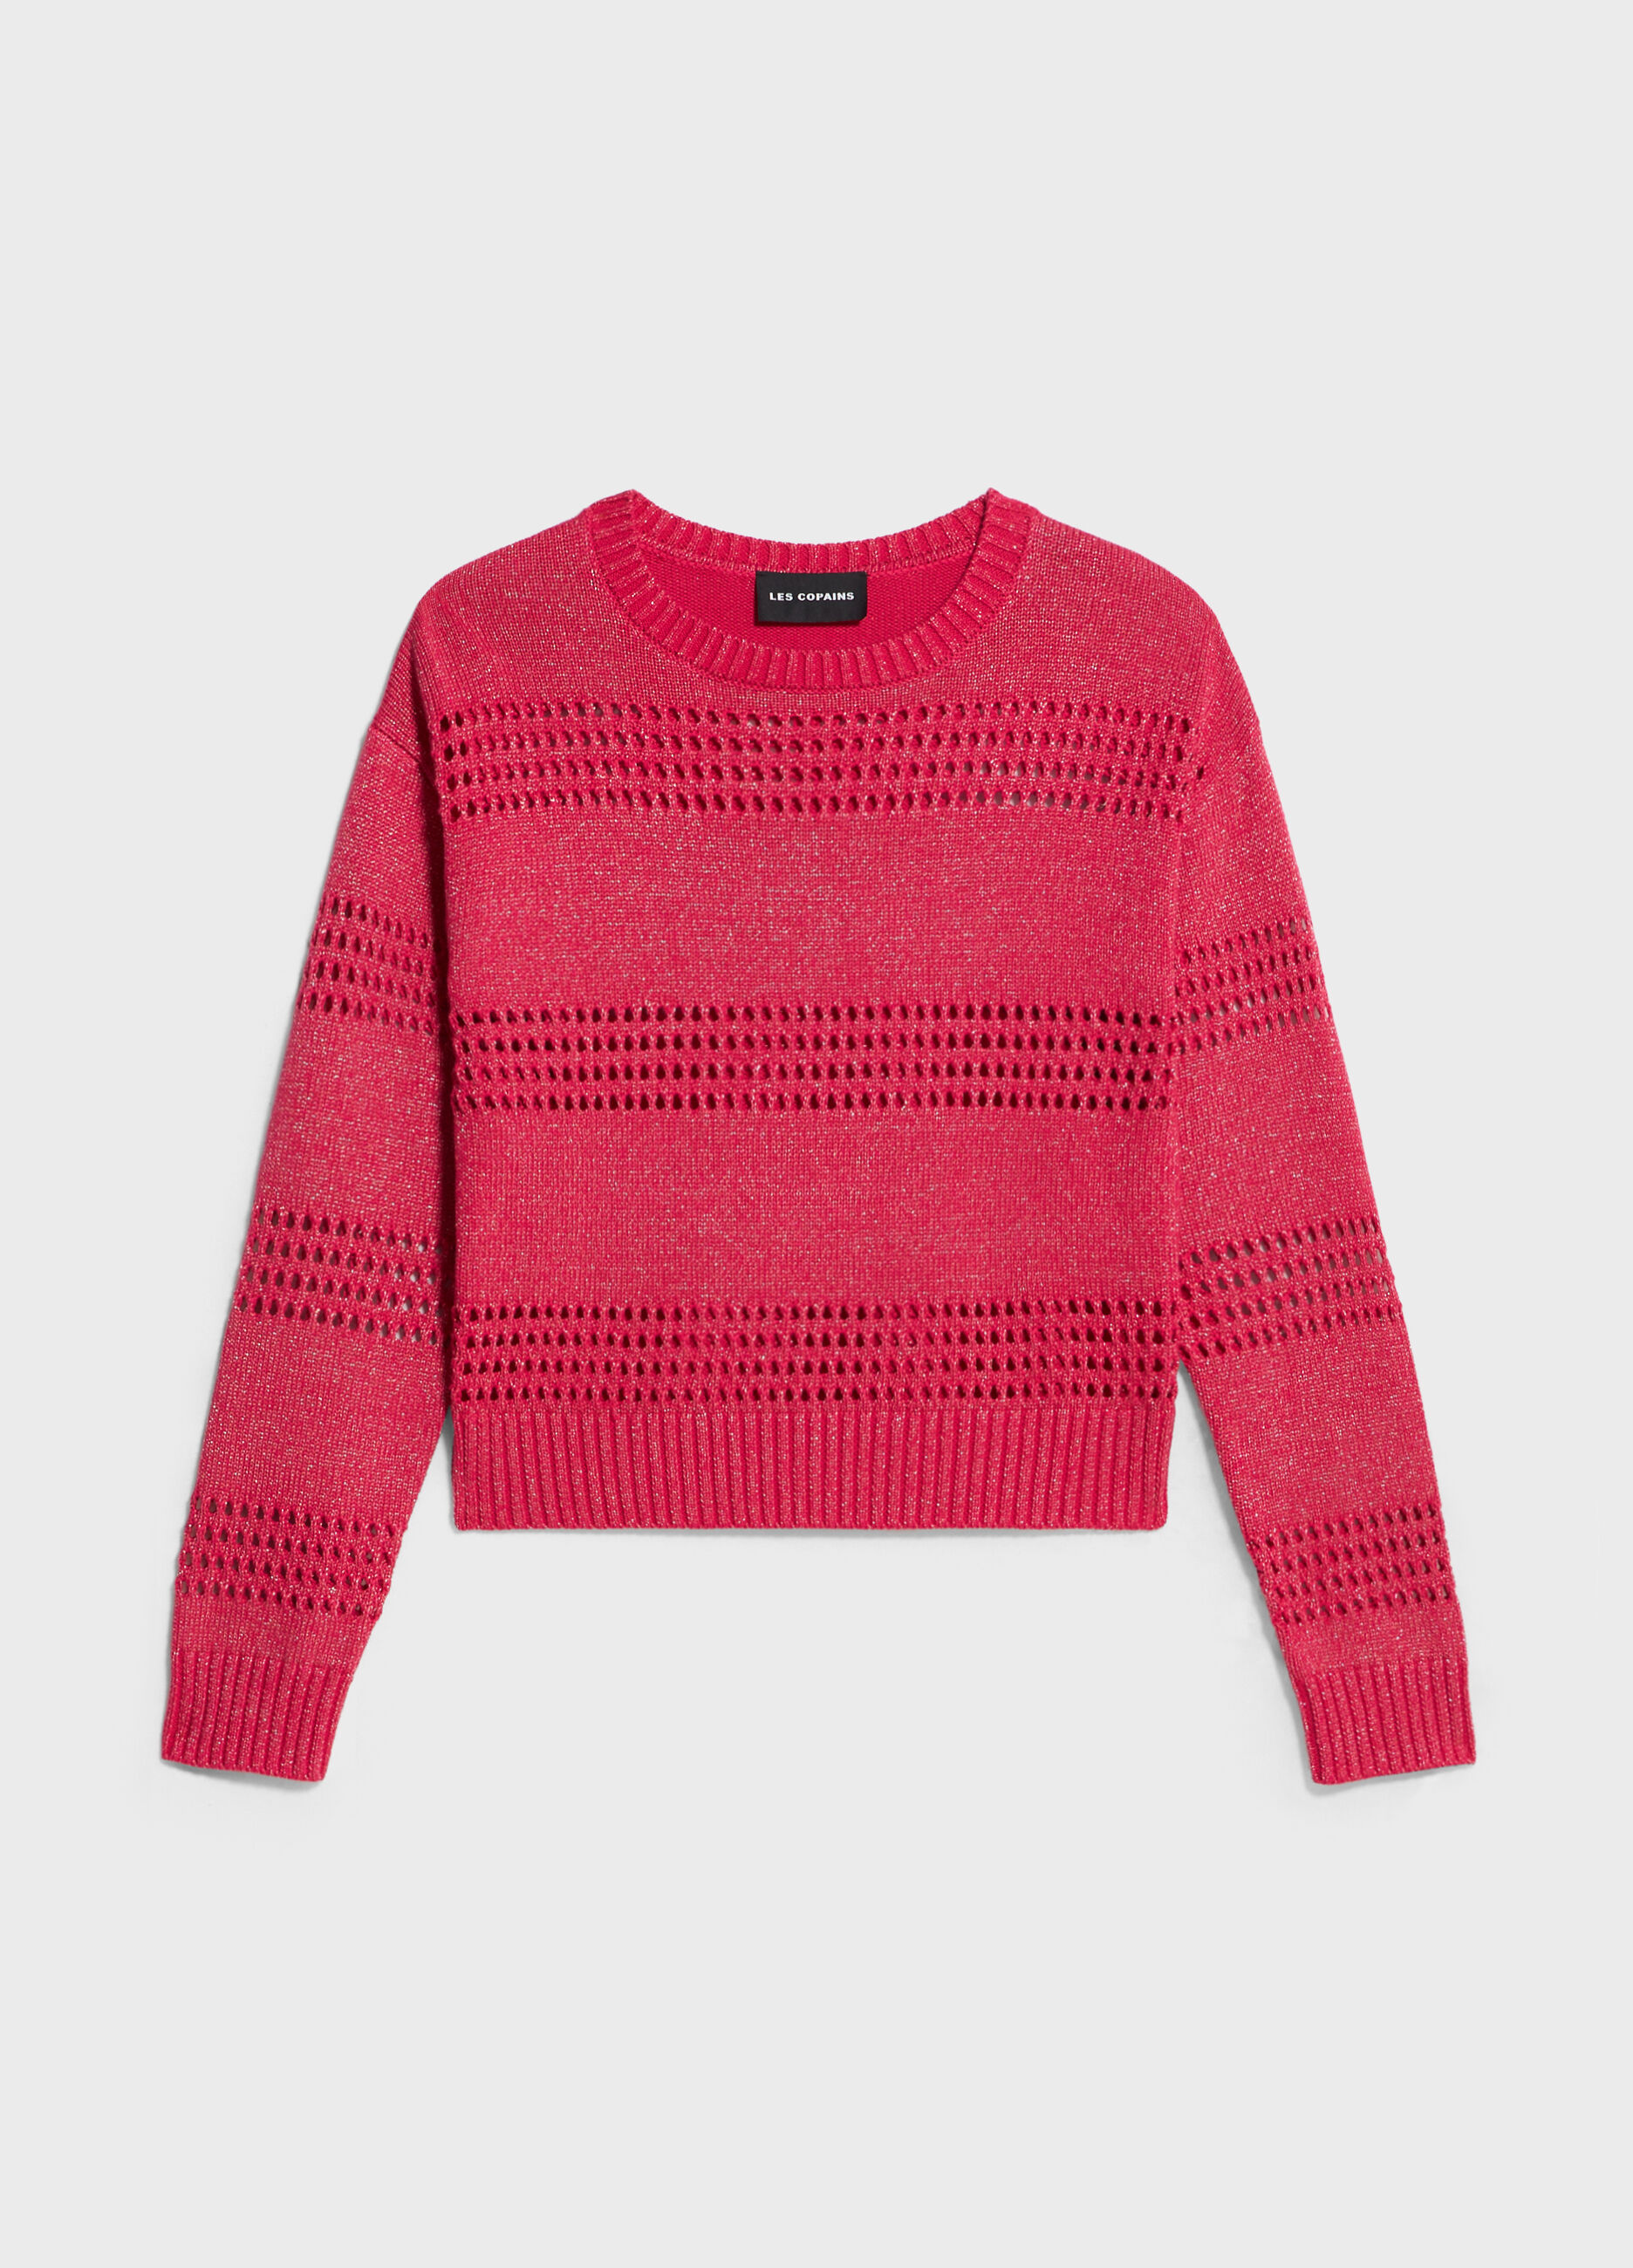 Maglione tricot in seta e cotone